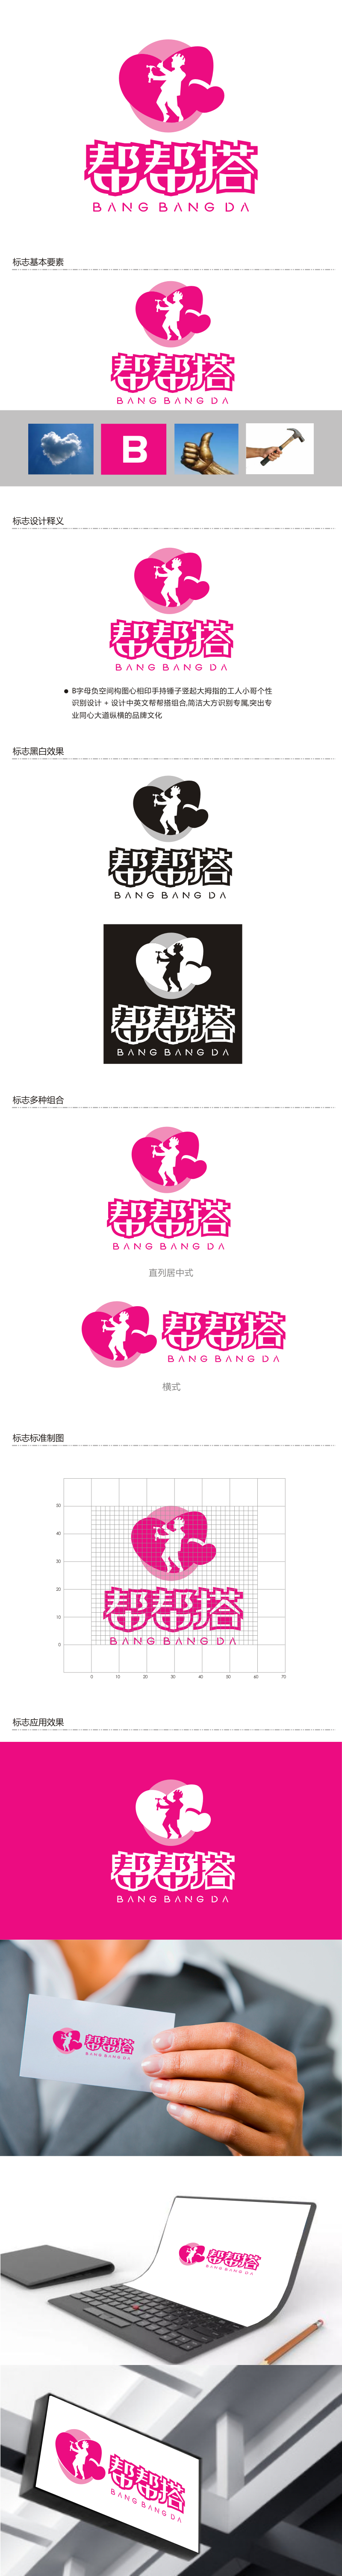 姜彦海的帮帮搭展览服务有限公司logo设计